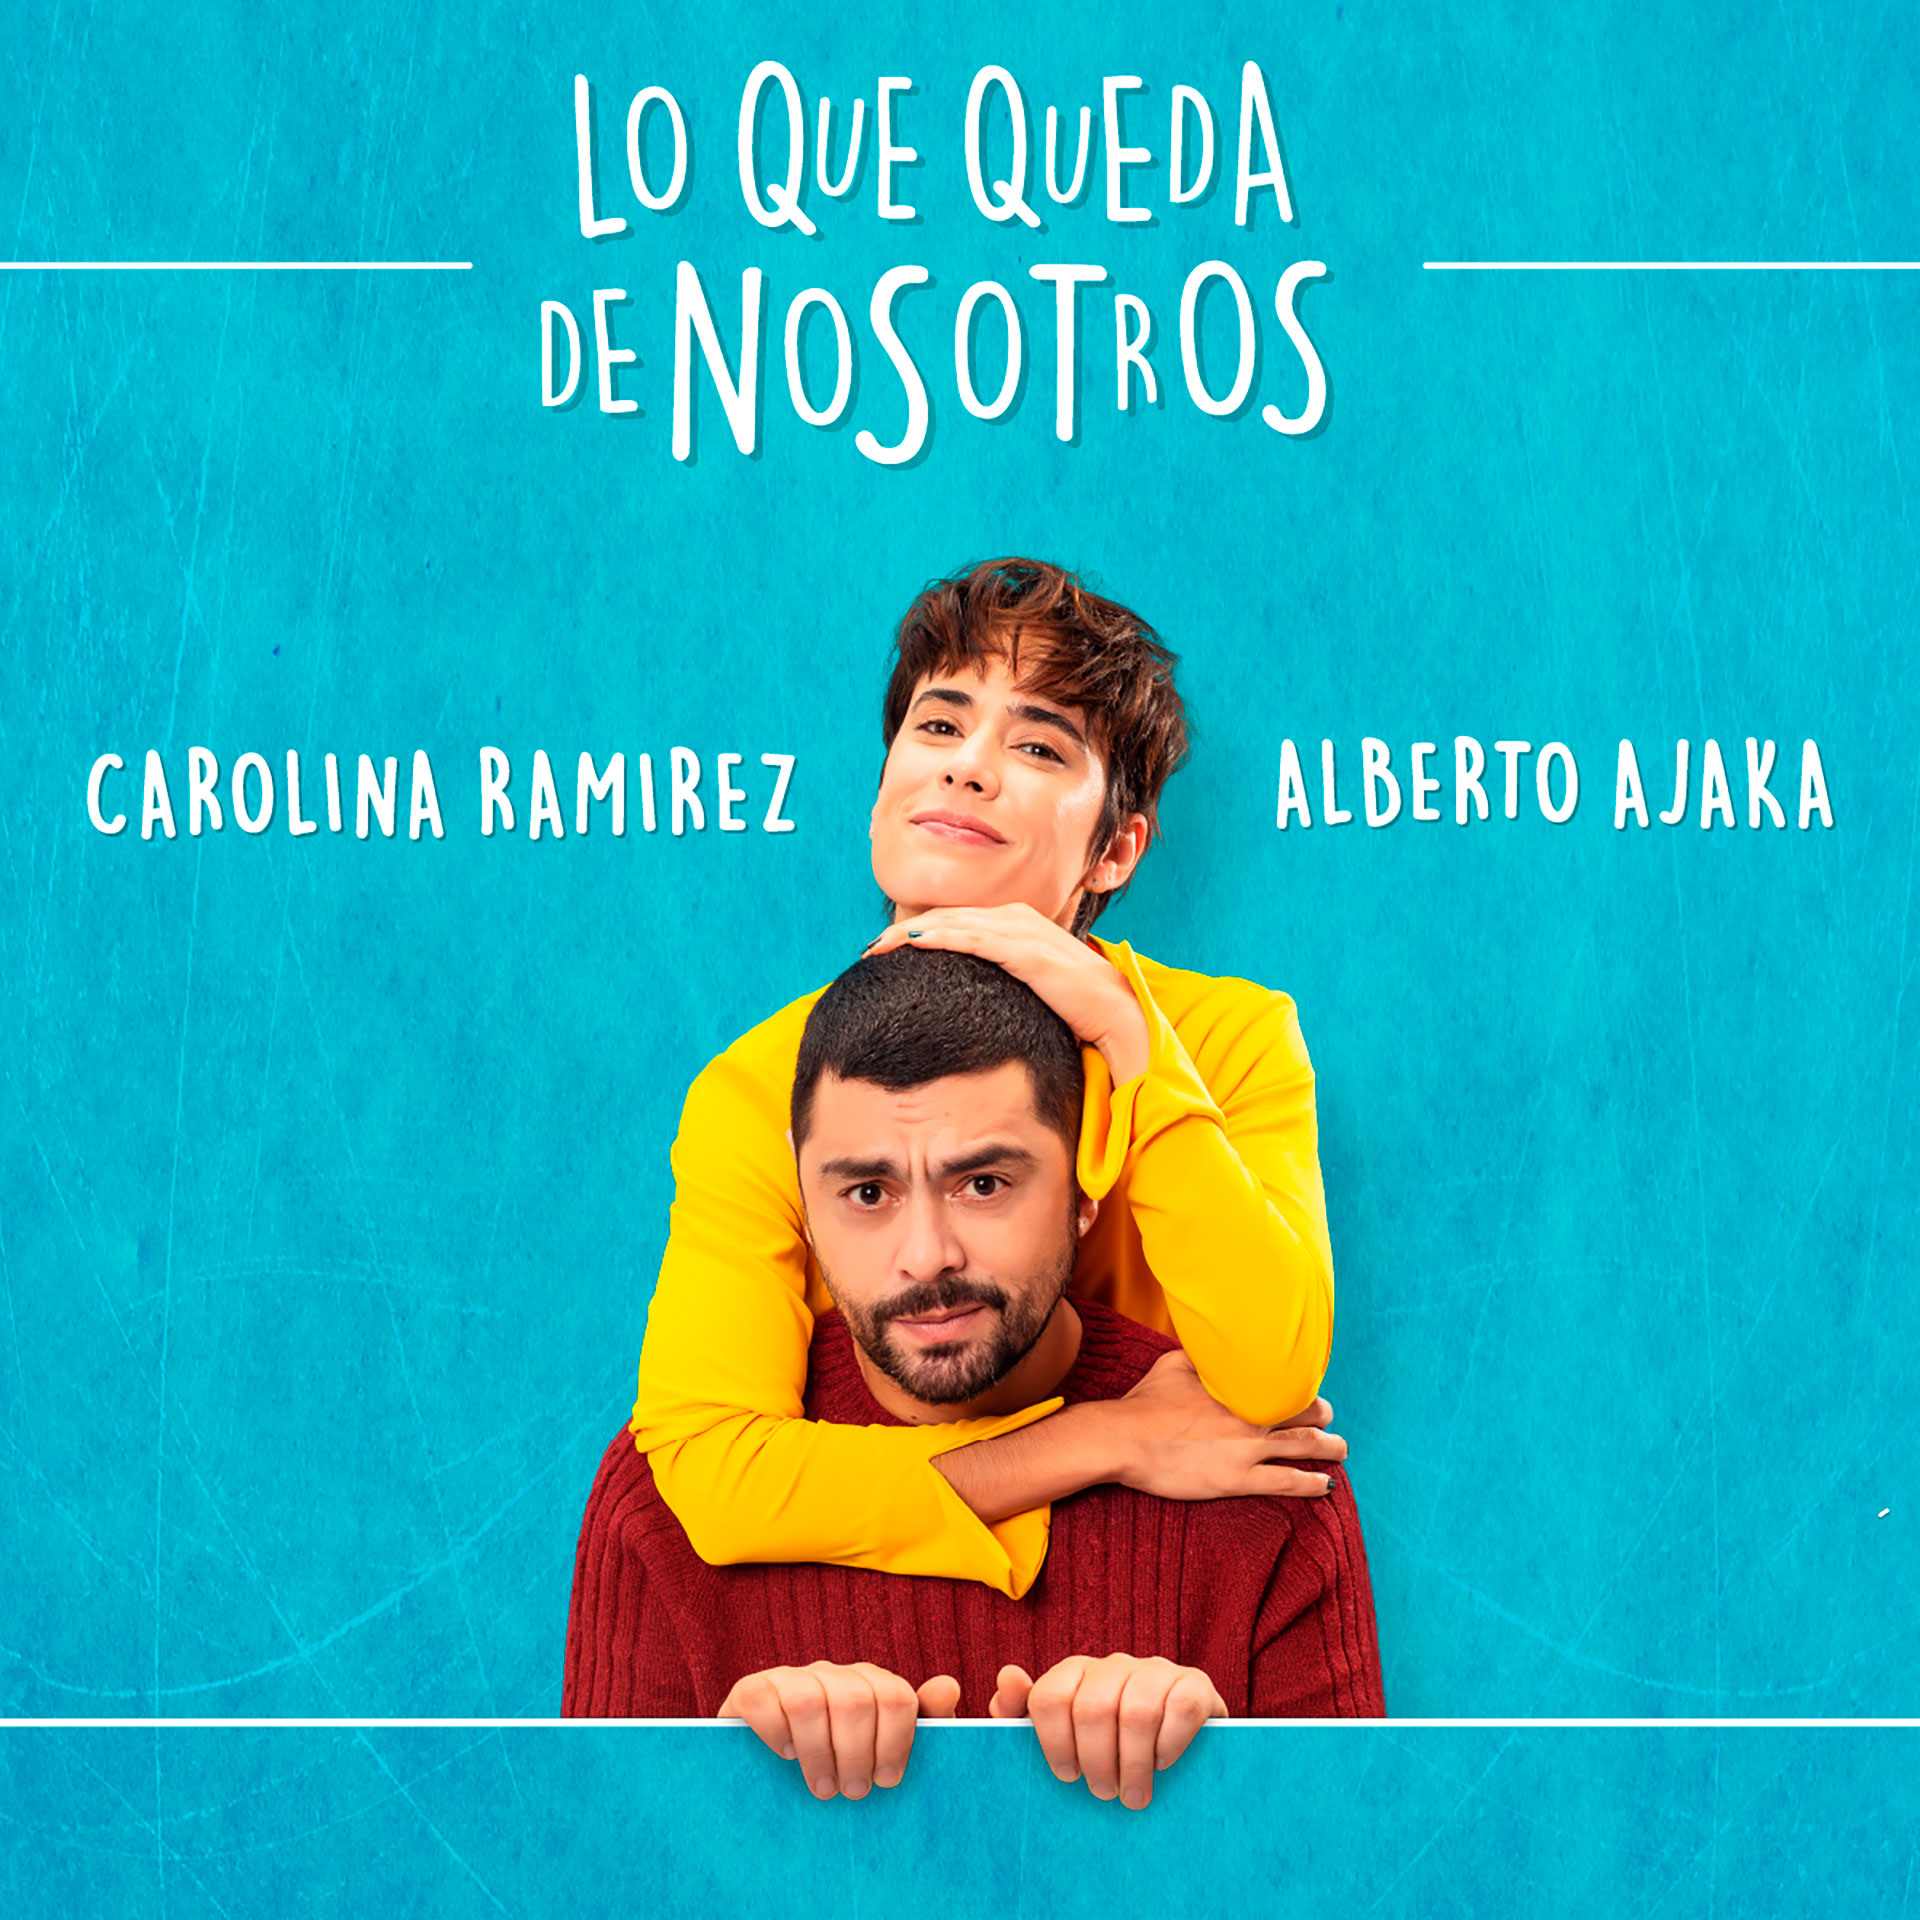 Carolina Ramírez y Alberto Ajaka estrenan el 1 de julio "Lo que queda de nosotros" en la Calle Corrientes, en una temporada limitada 